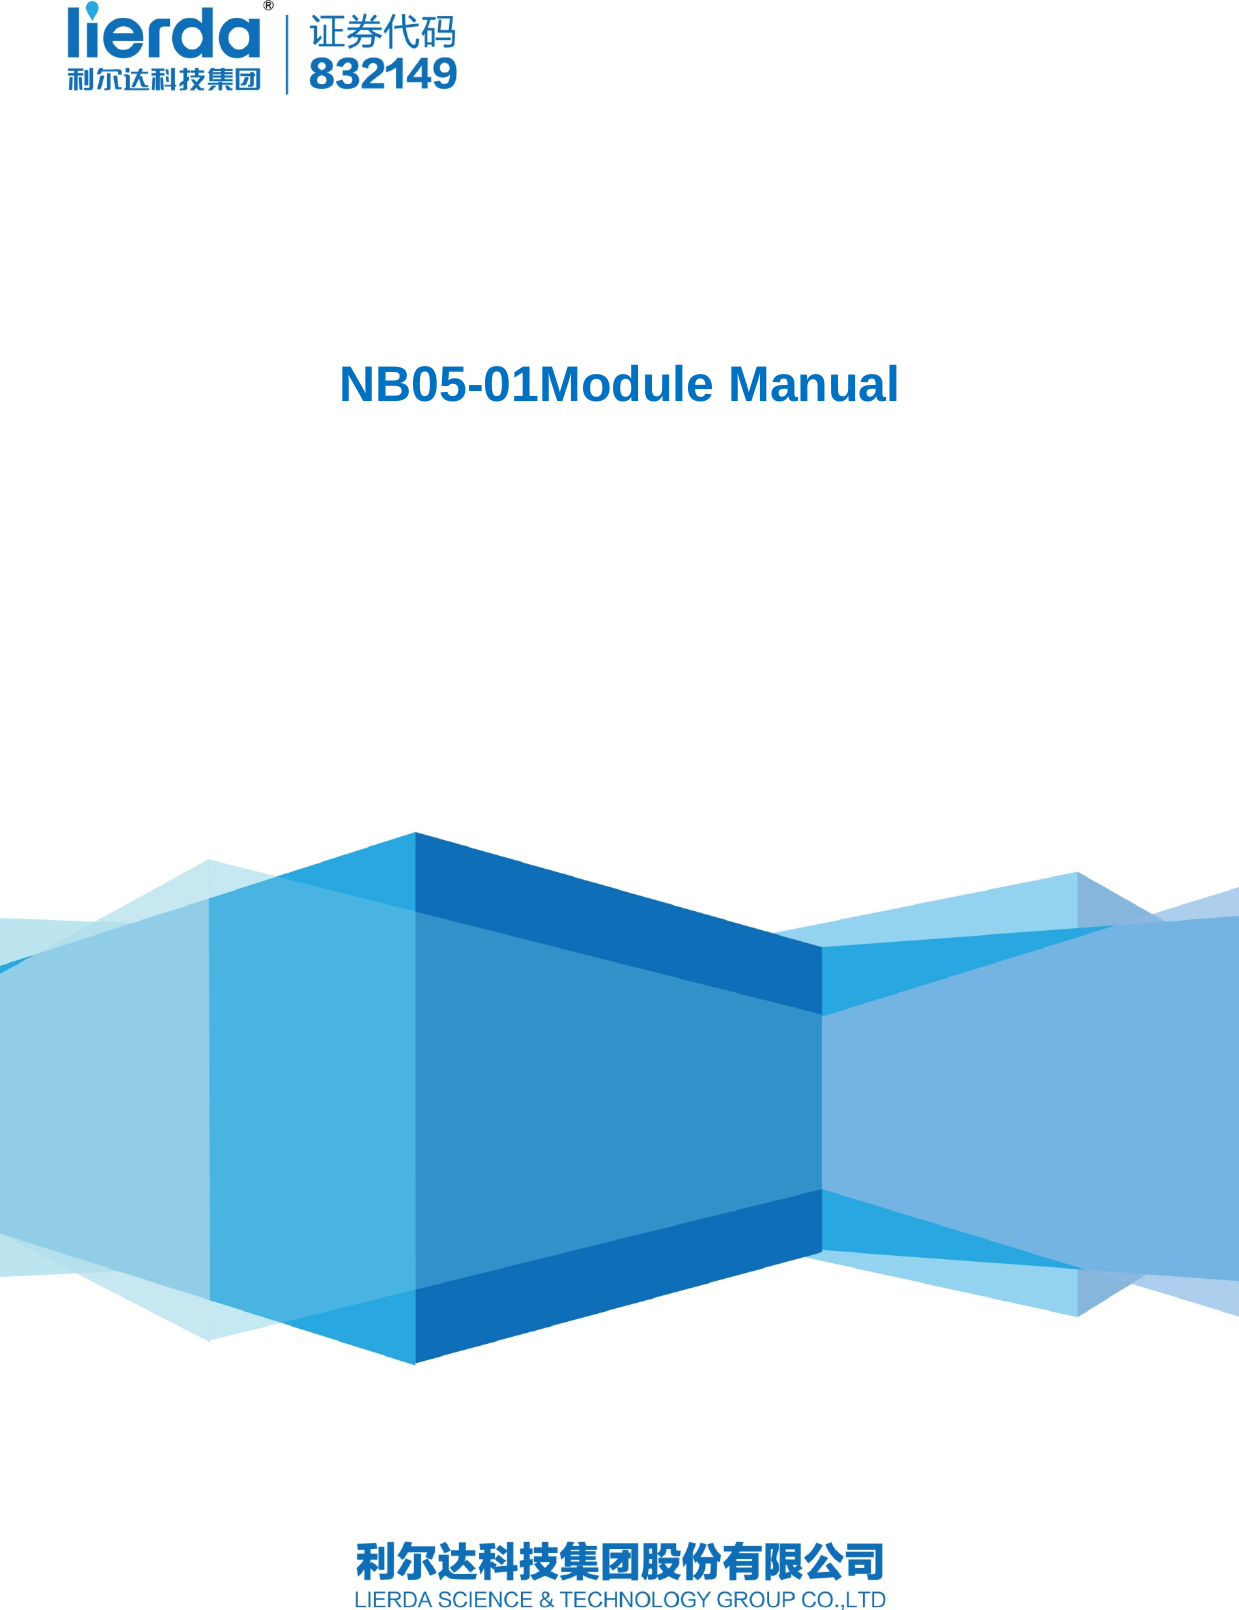                              NB05-01Module Manual   